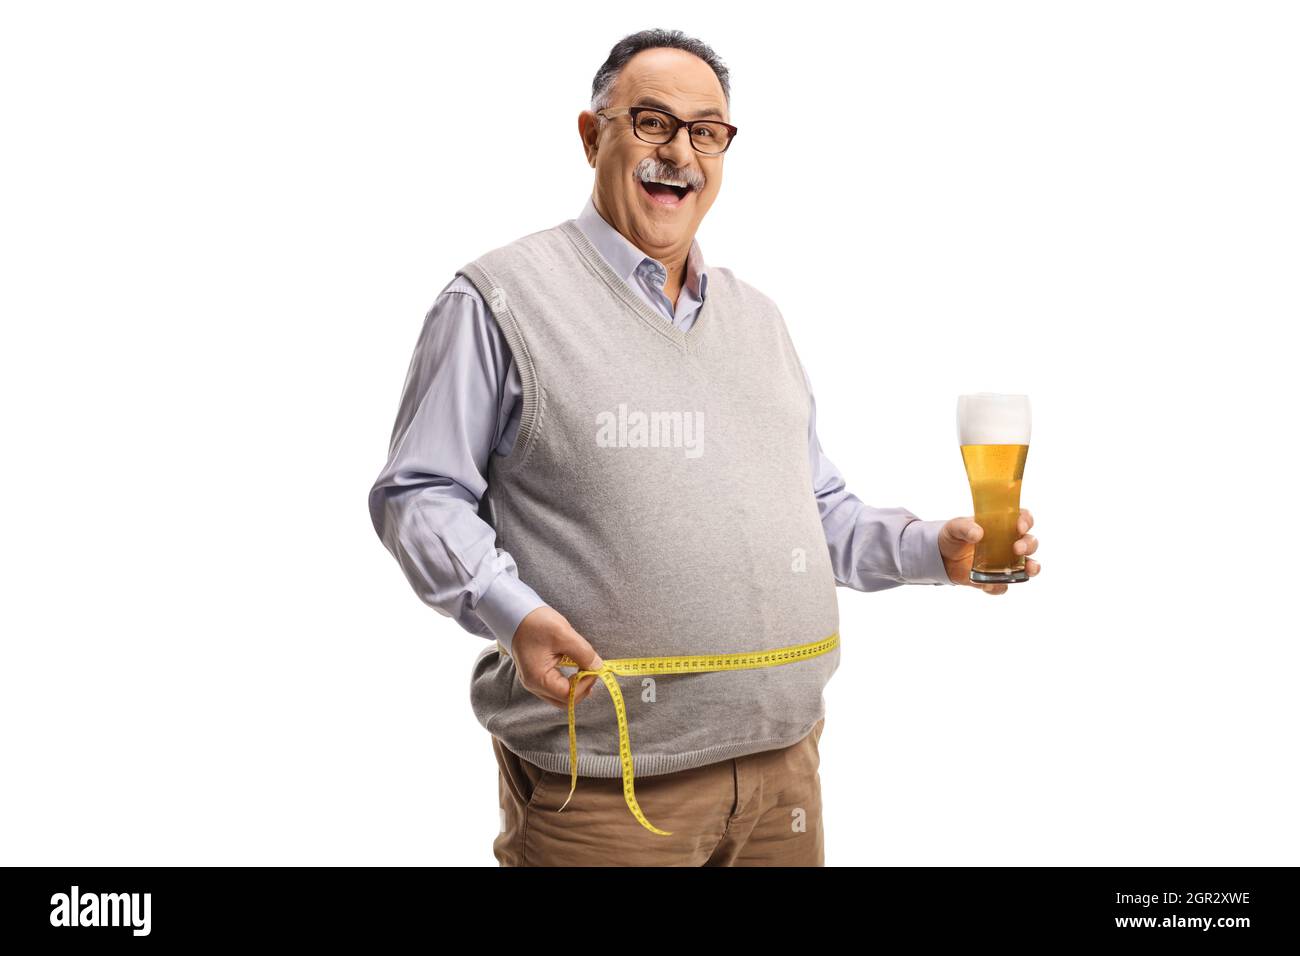 Fröhlicher reifer Mann, der ein Glas Bier hält und seine Taille isoliert auf weißem Hintergrund misst Stockfoto